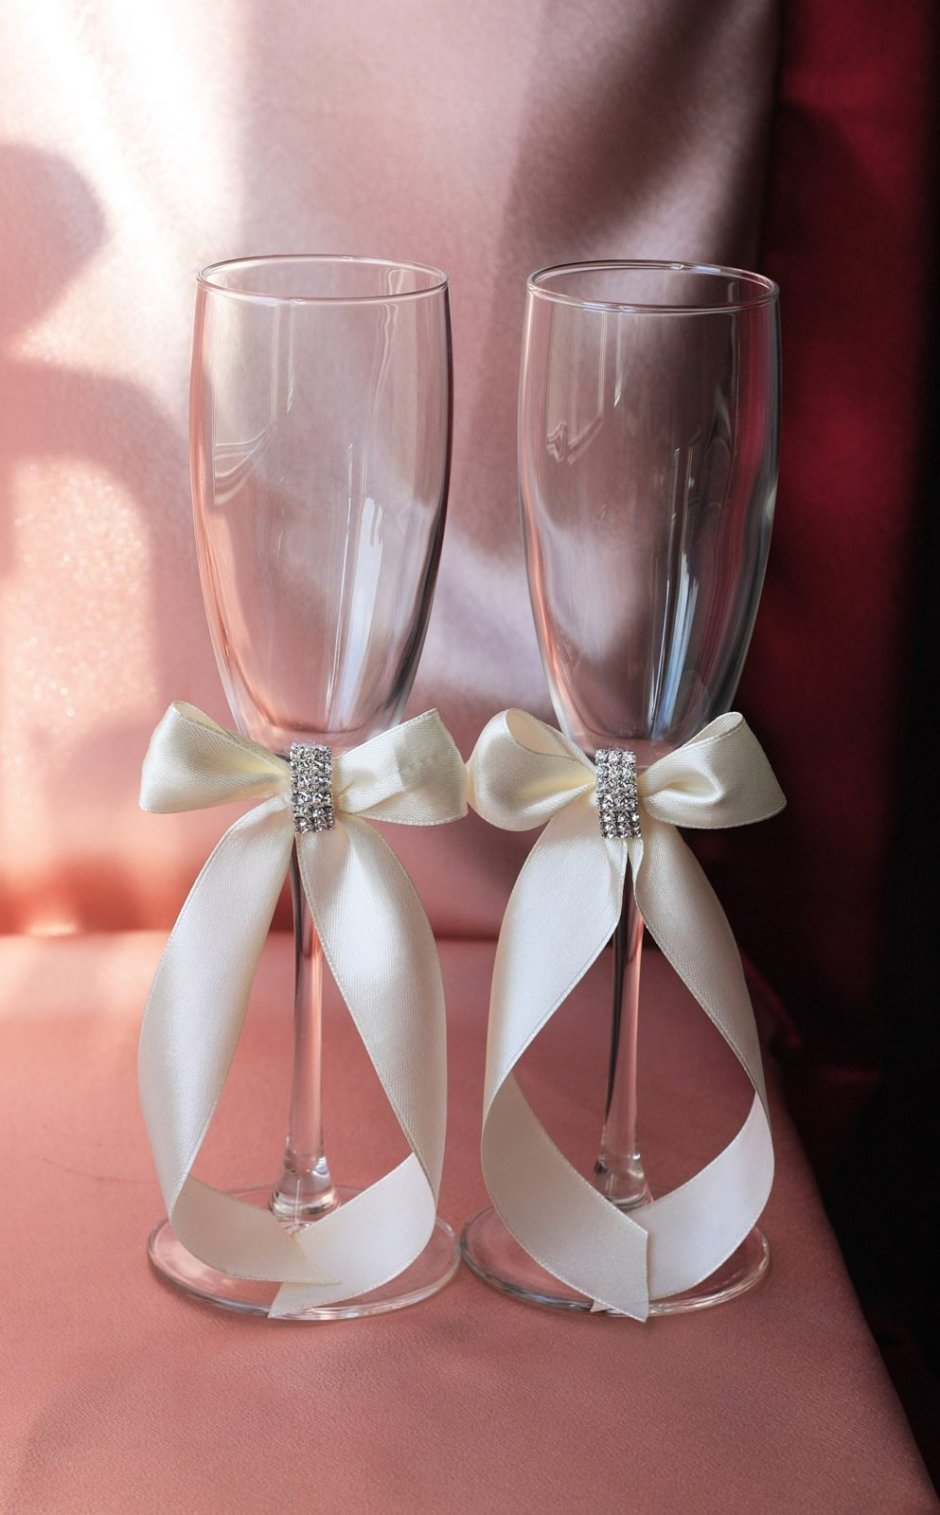 Свадебные бокалы в Серебряном цвете